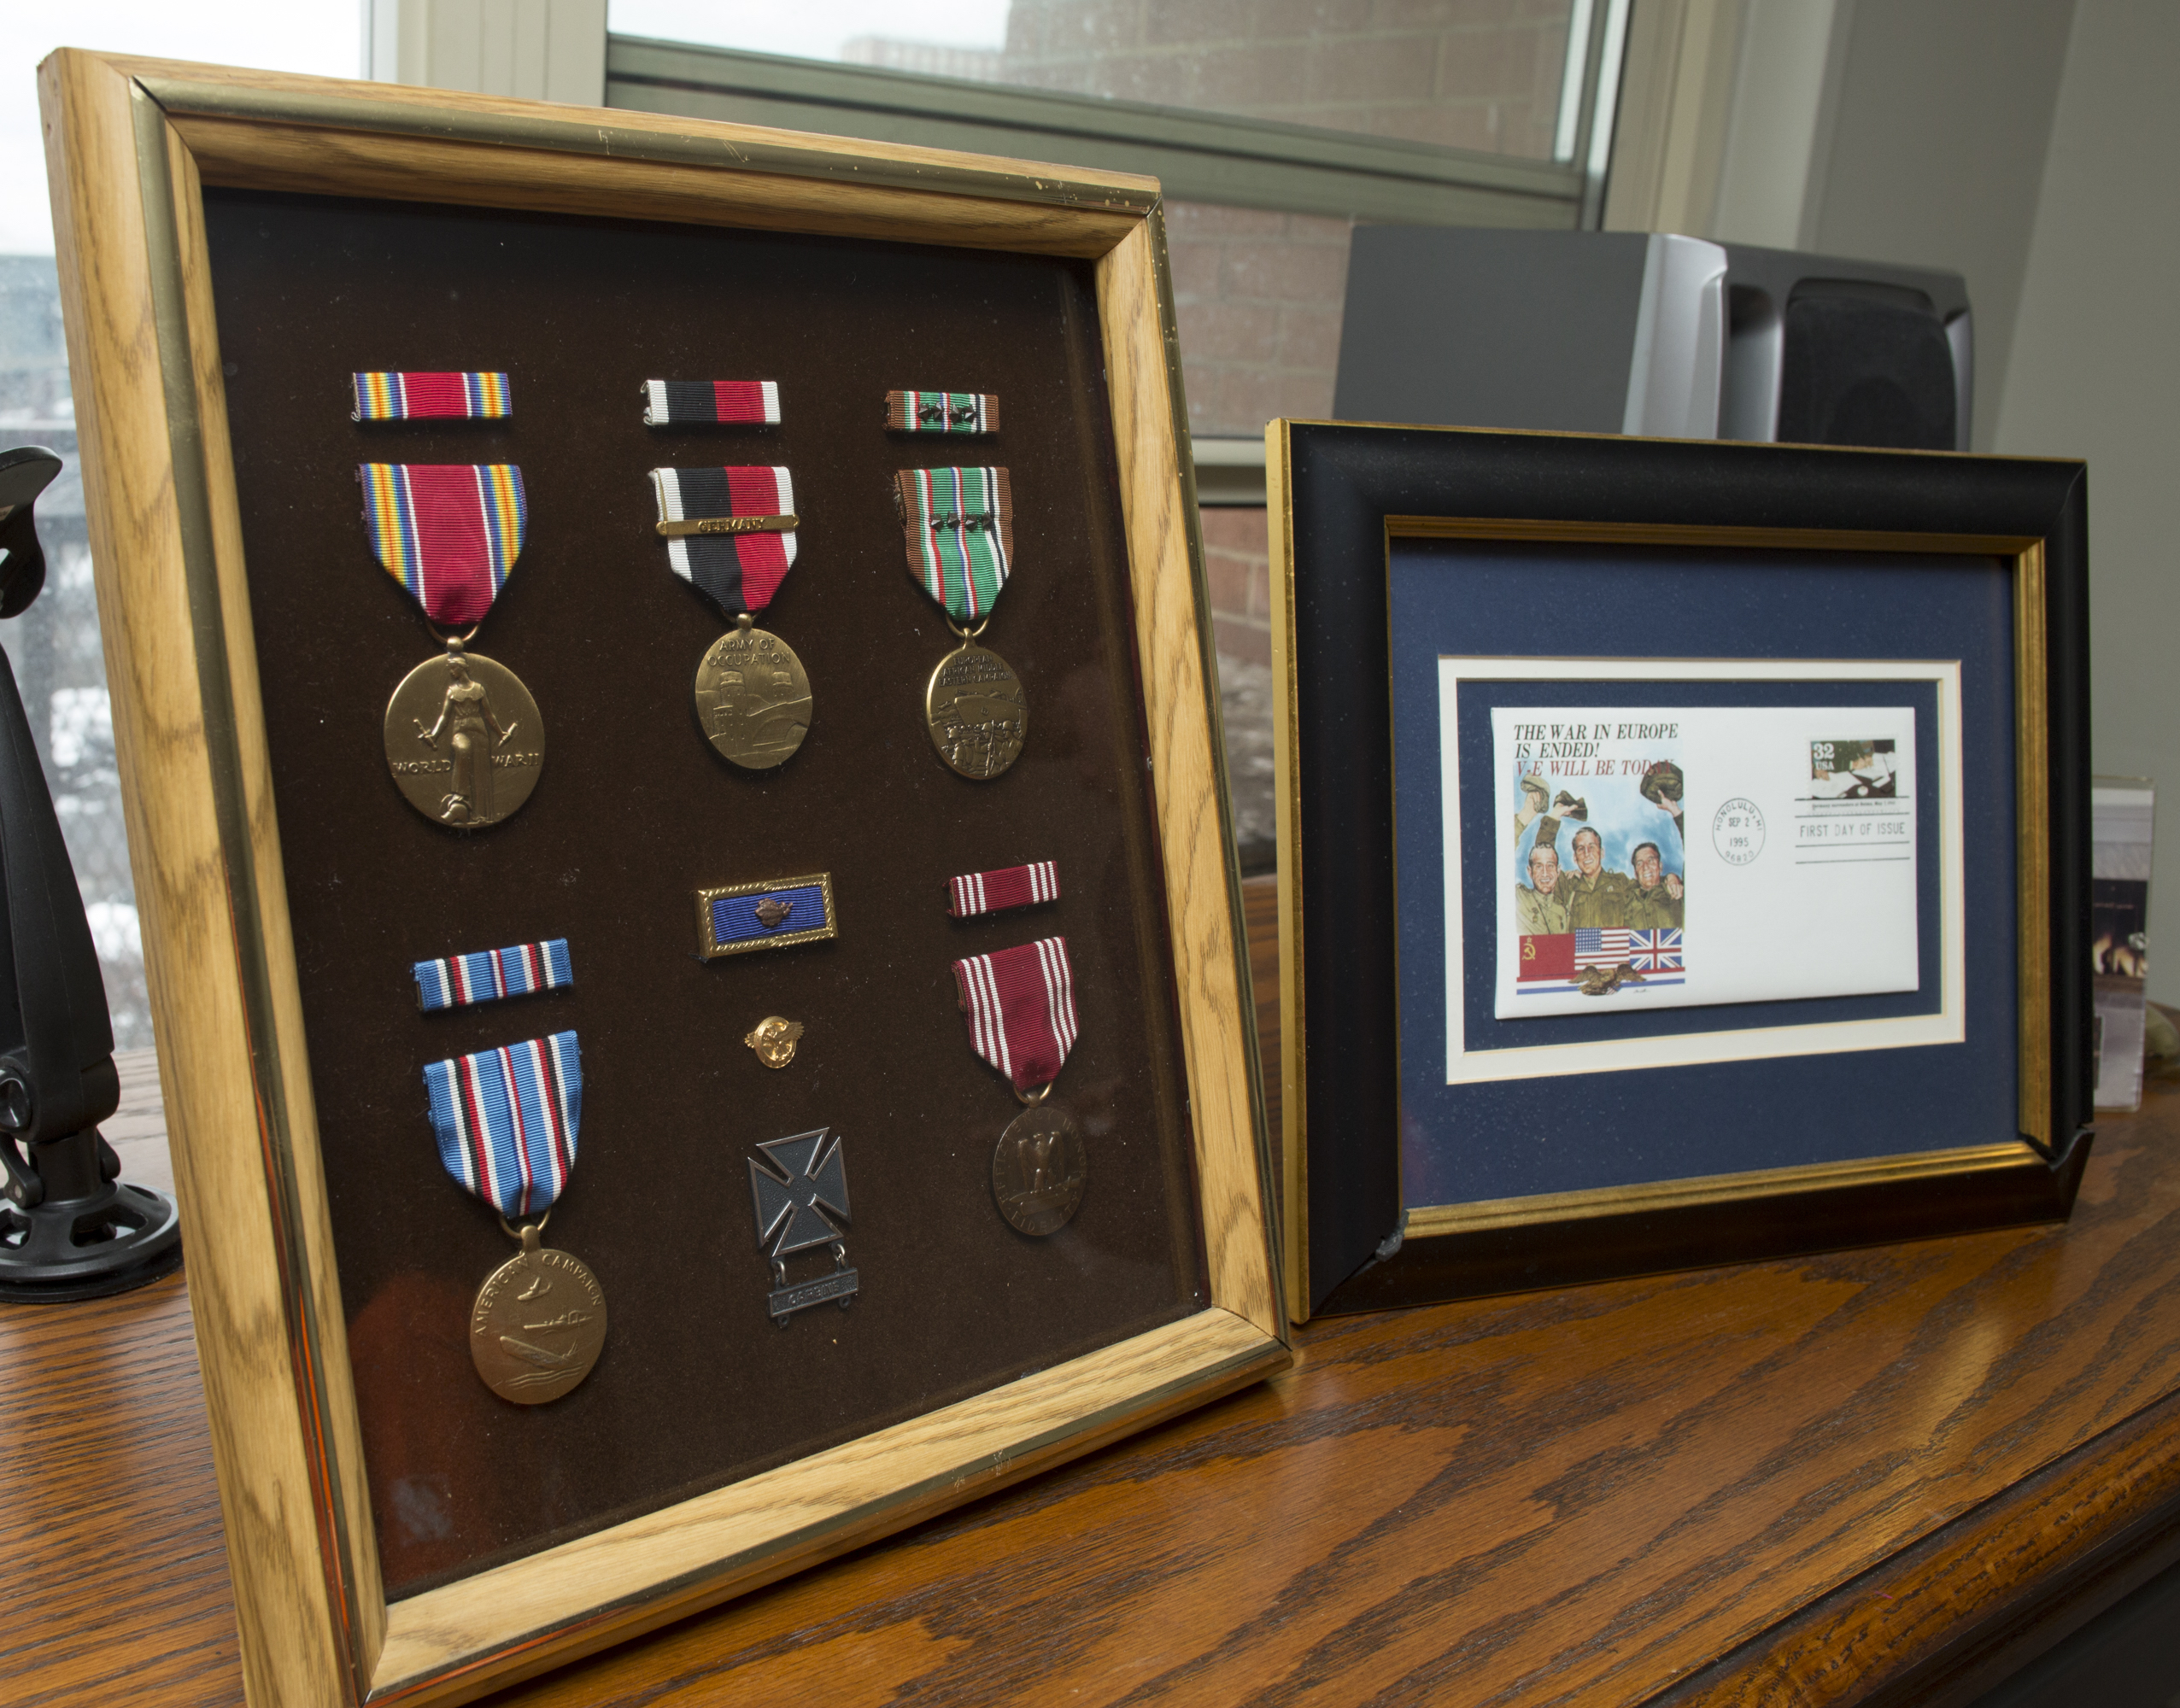 Frames featuring medals, postcard from World War II